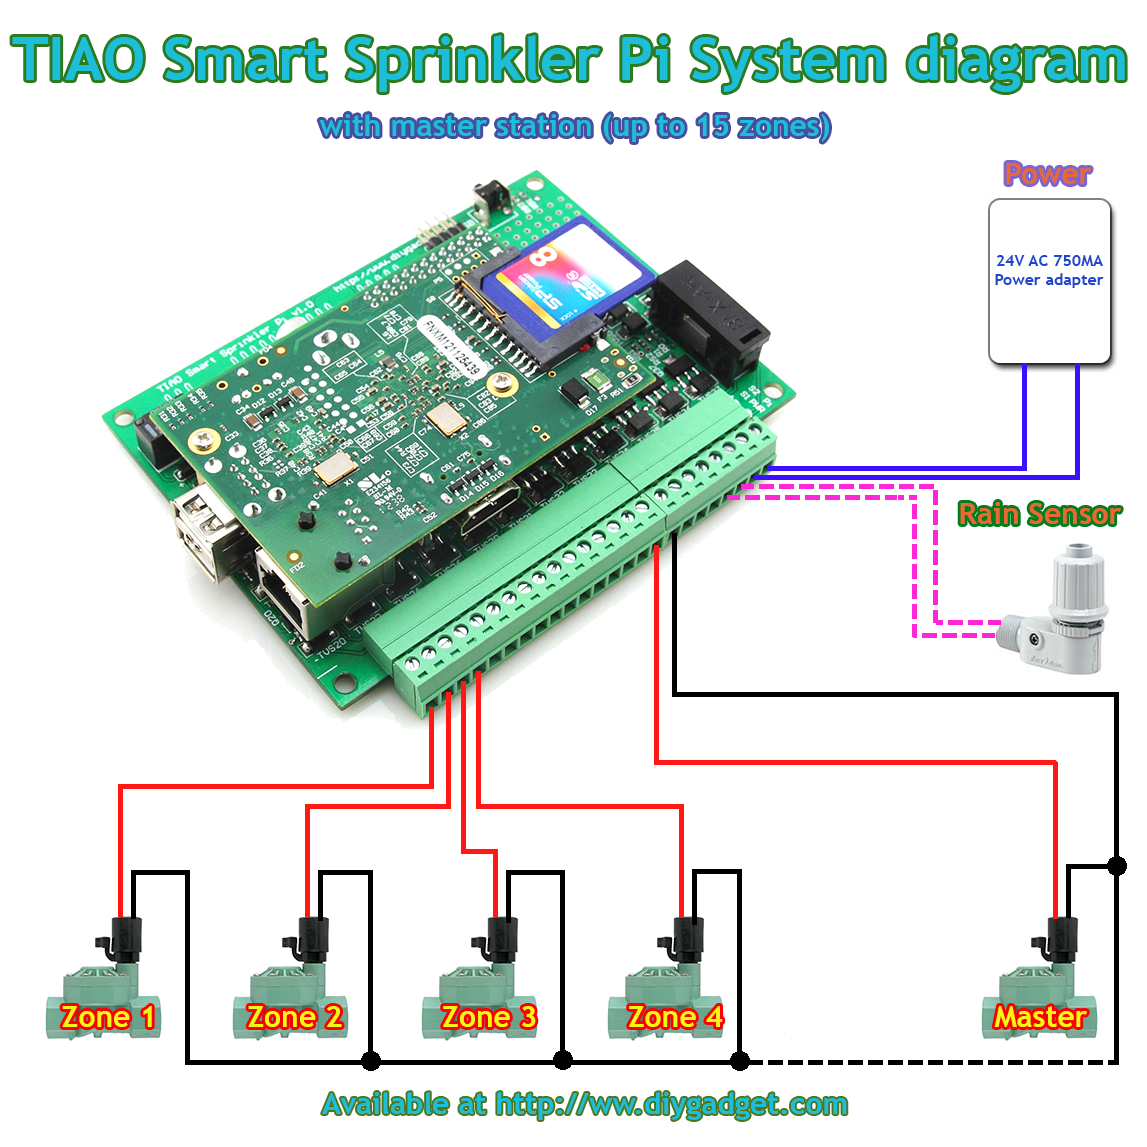 access via PC or phone!! Smart Network Sprinkler Controller Pi V2-16 Stations 